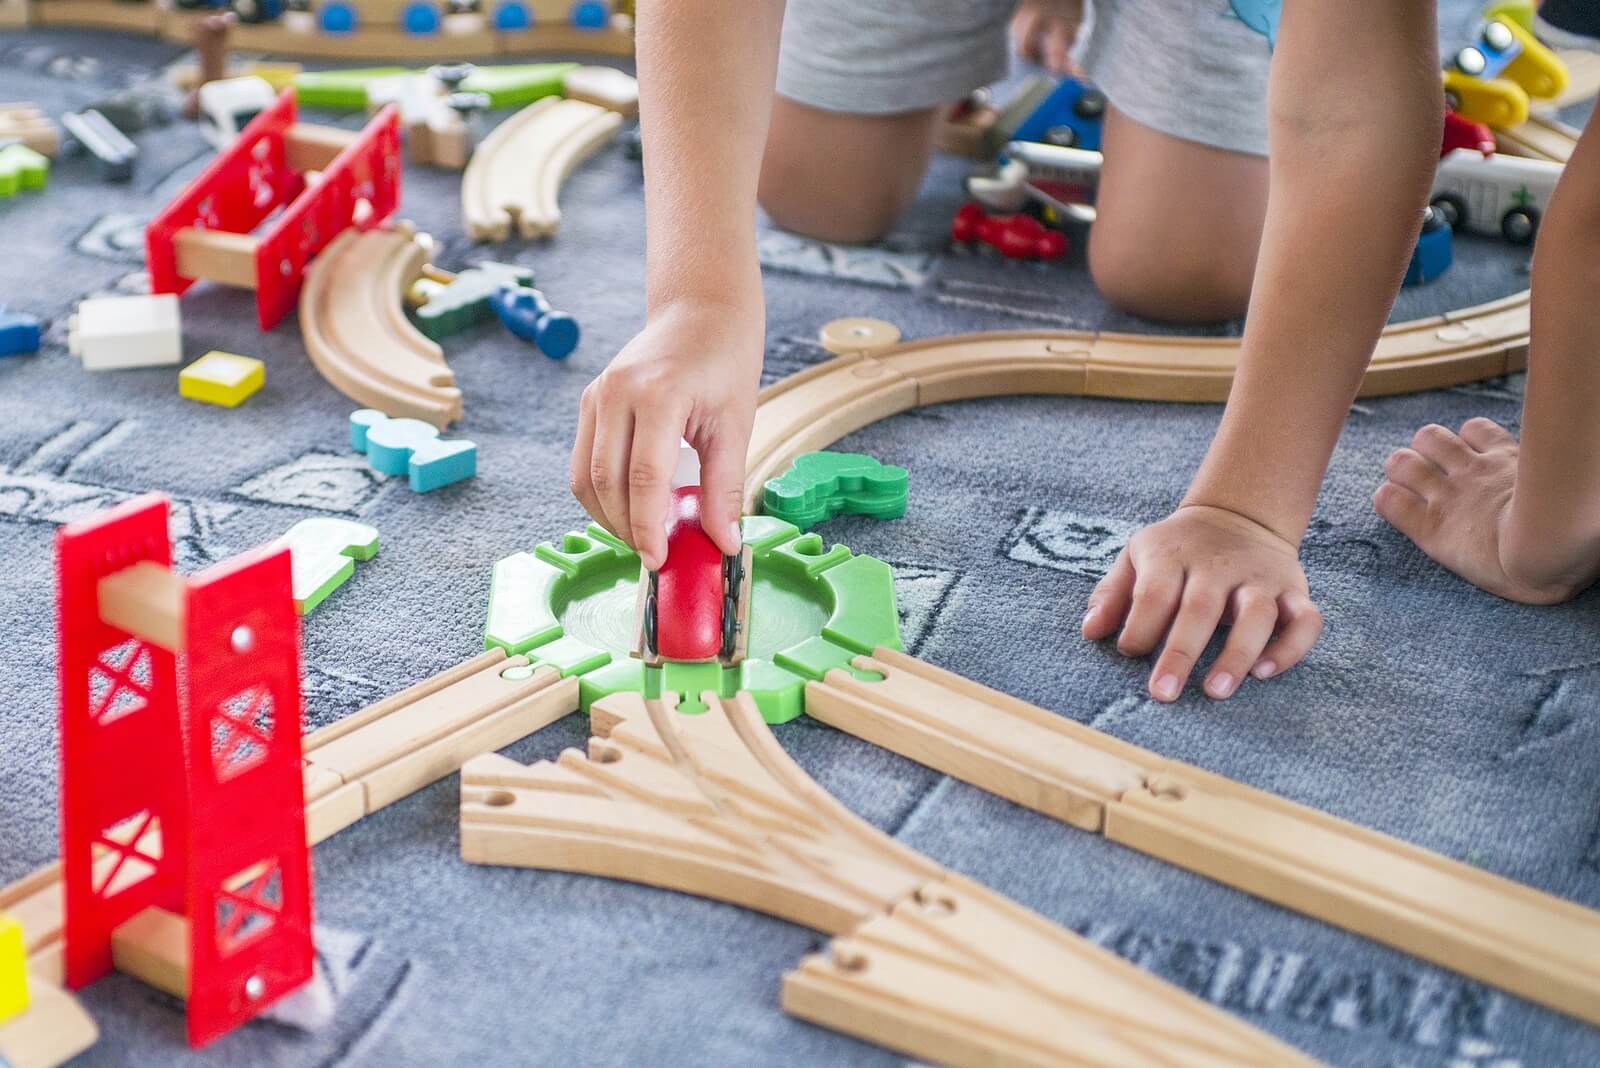 Niño jugando con trenes en su zona de juegos.